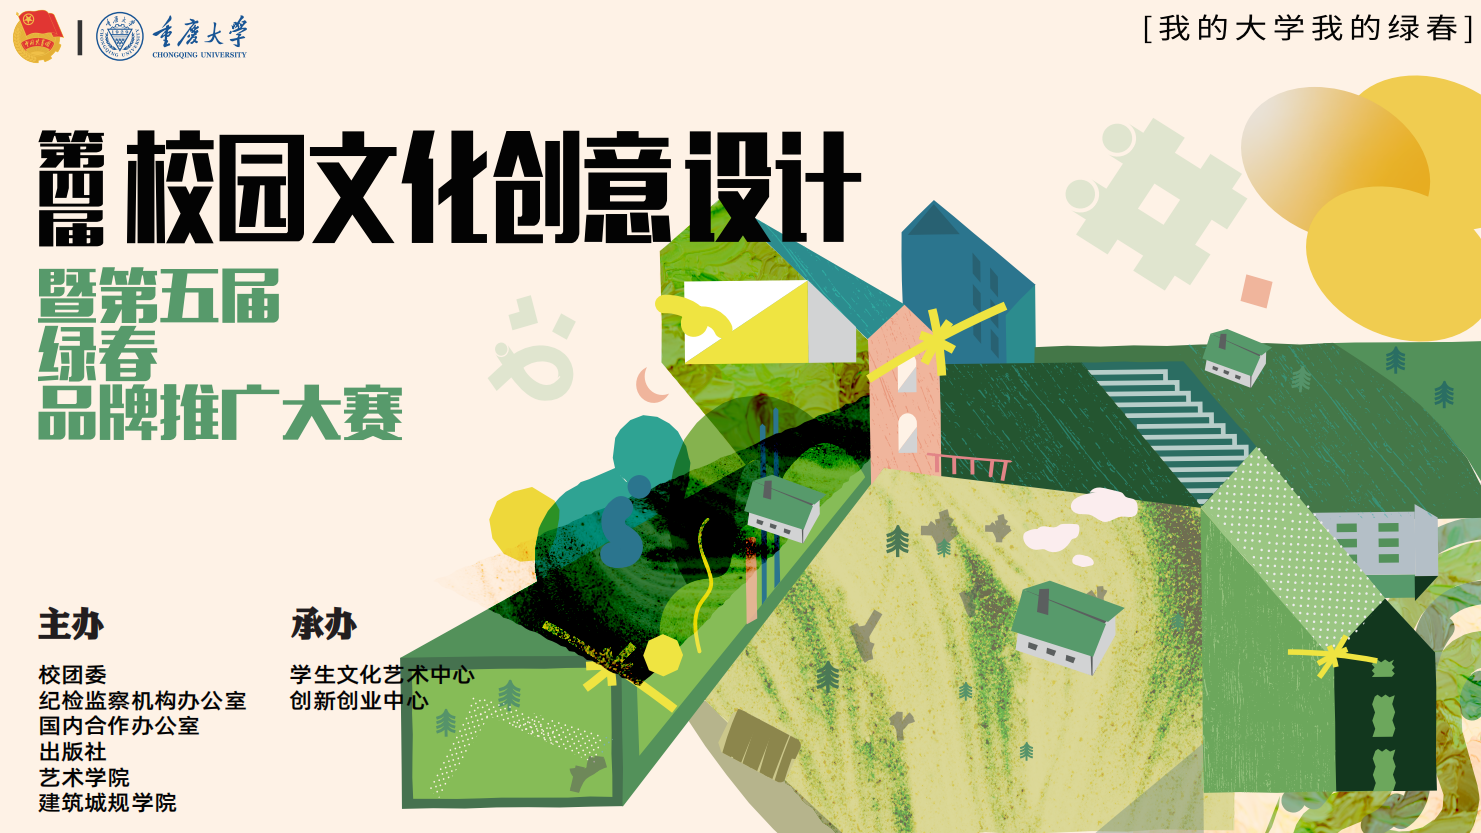 重庆大学第四届校园文化创意设计暨第五届绿春品牌推广大赛